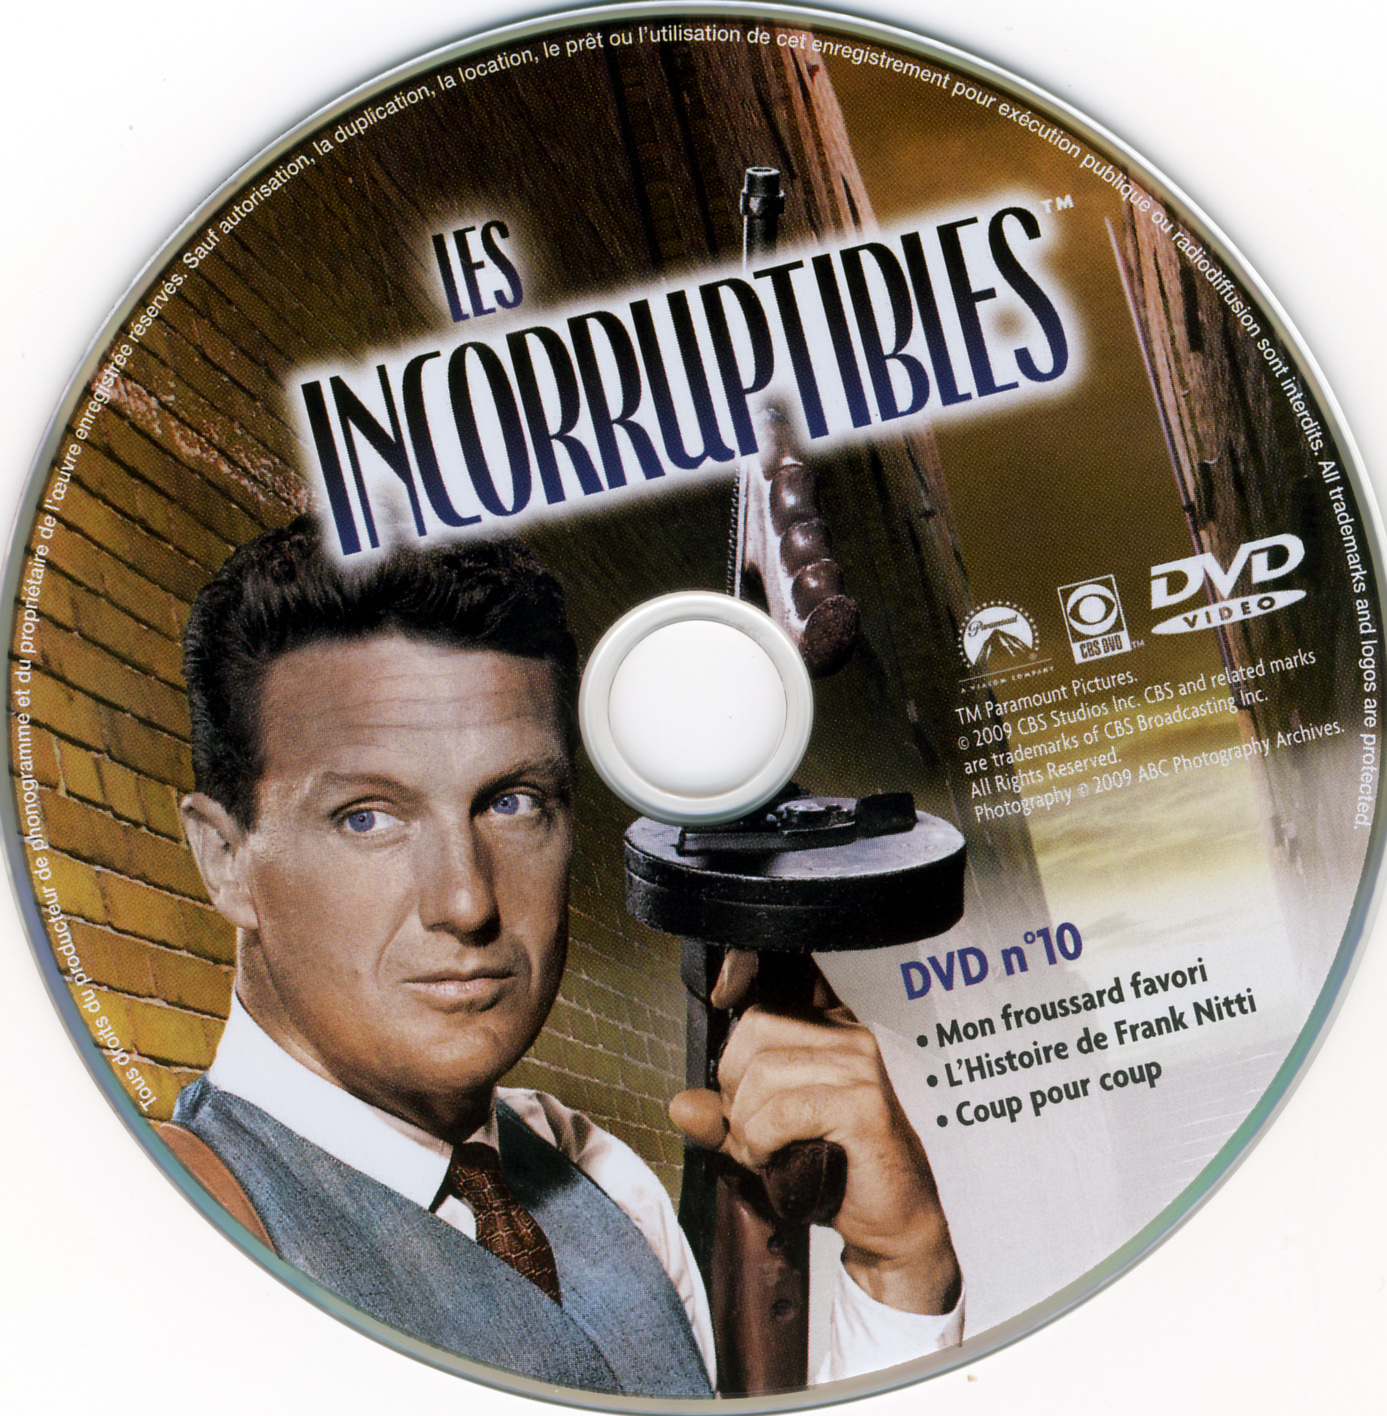 Les incorruptibles intgrale DVD 10